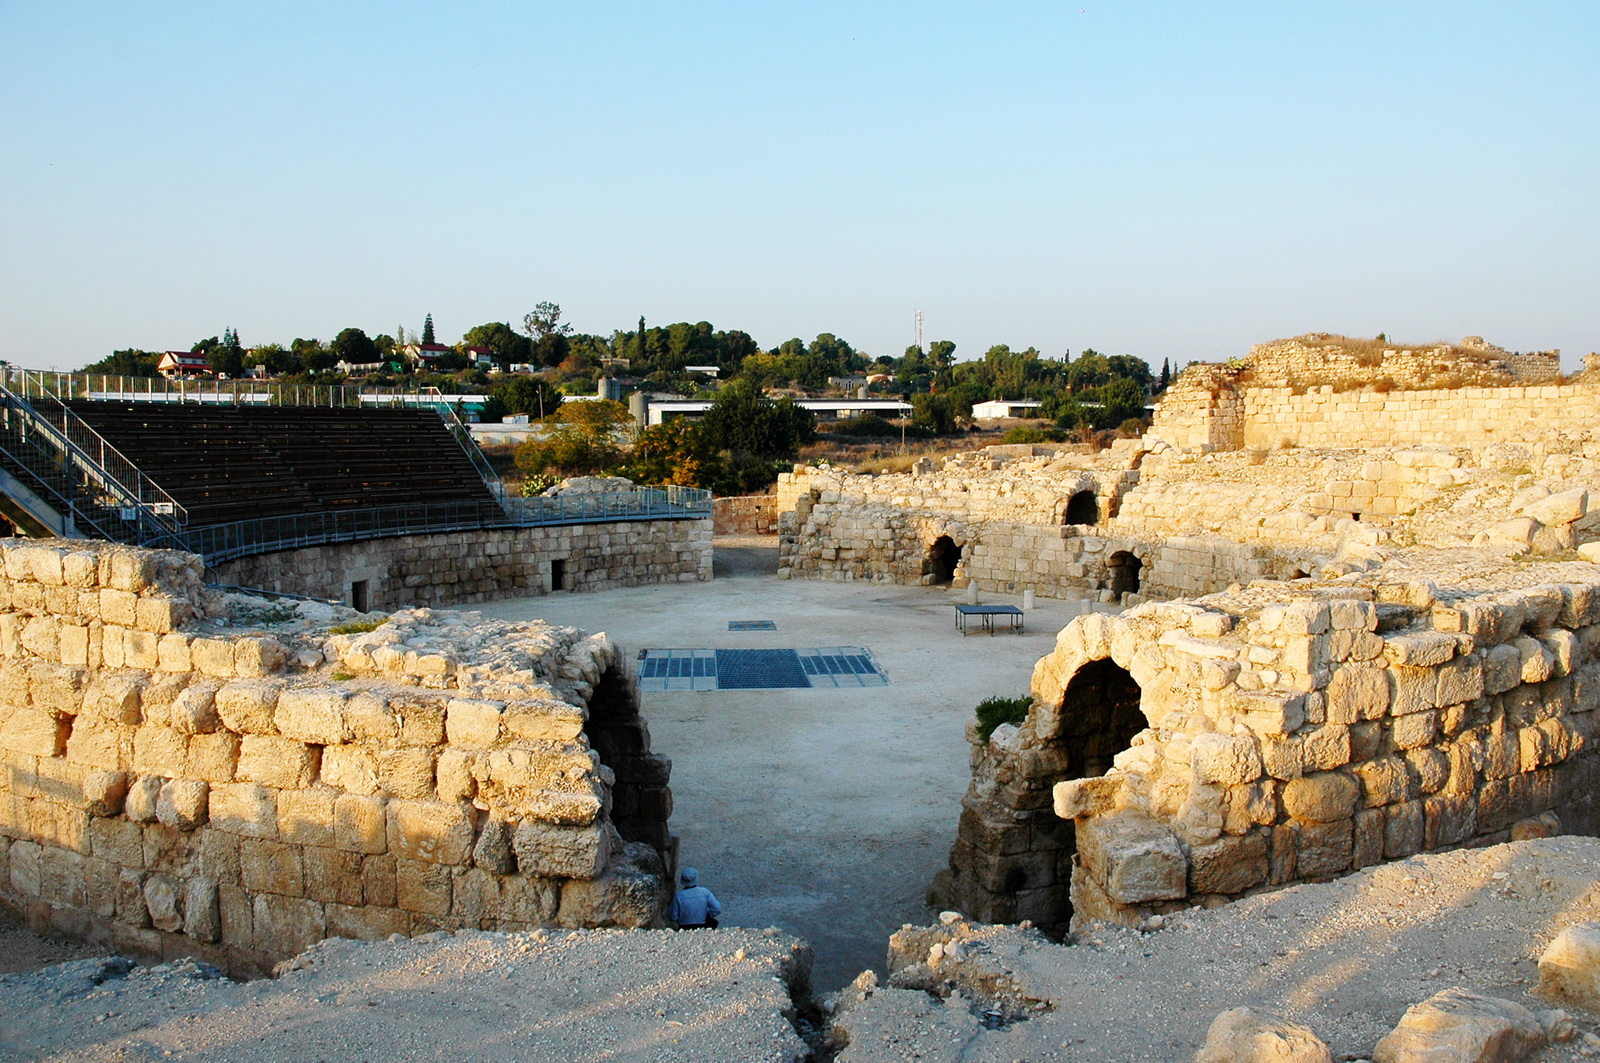 בית גוברין - שרידי אמפיתיאטרון מהתק' הרומית (ברקע - קיבוץ בית גוברין)